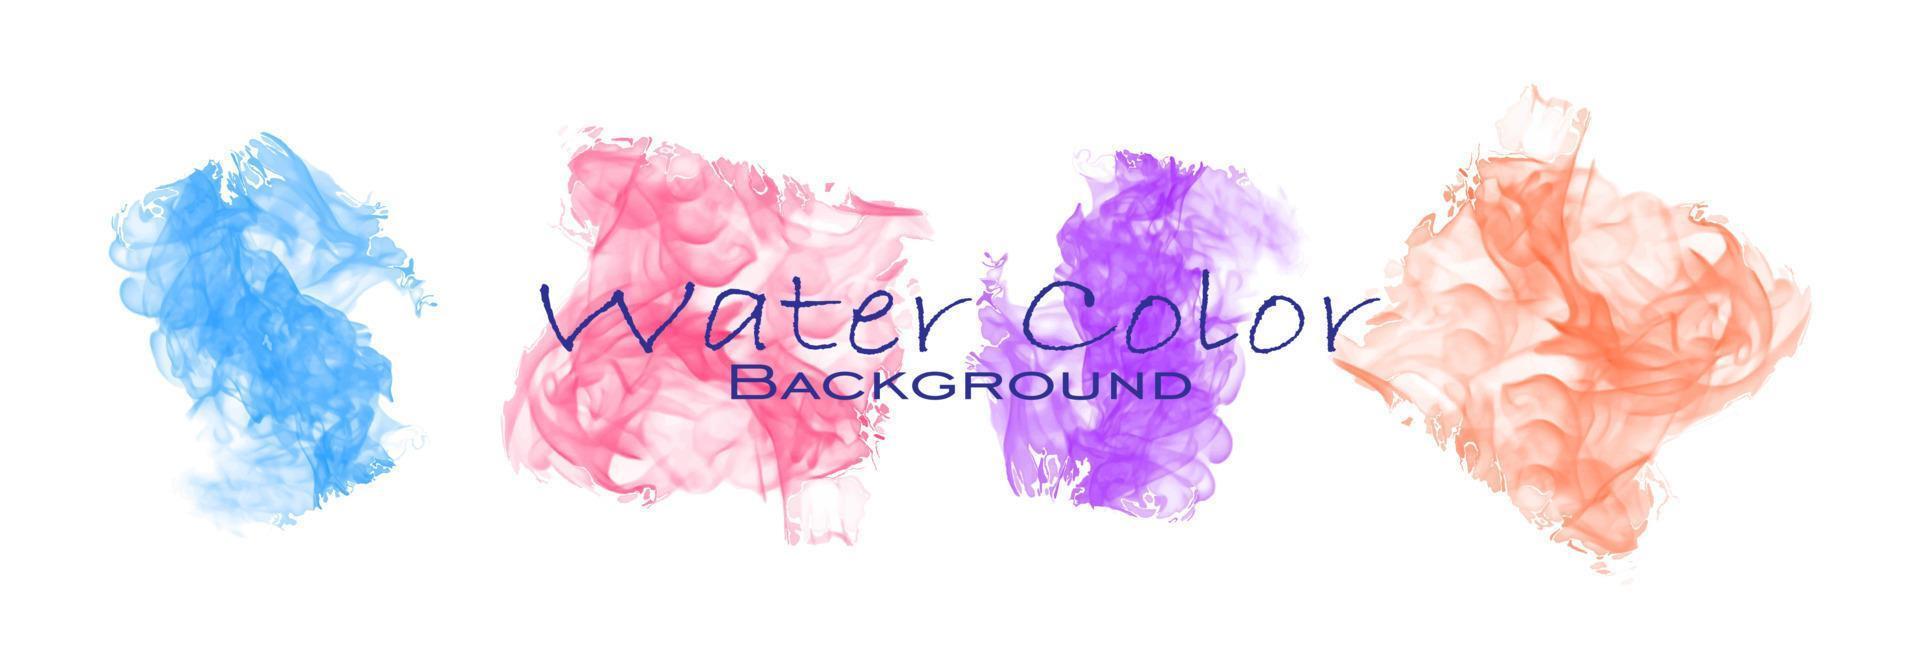 eine sammlung von aquarellelementen mit verschiedenen farben, rot, lila, blau und orange vektor